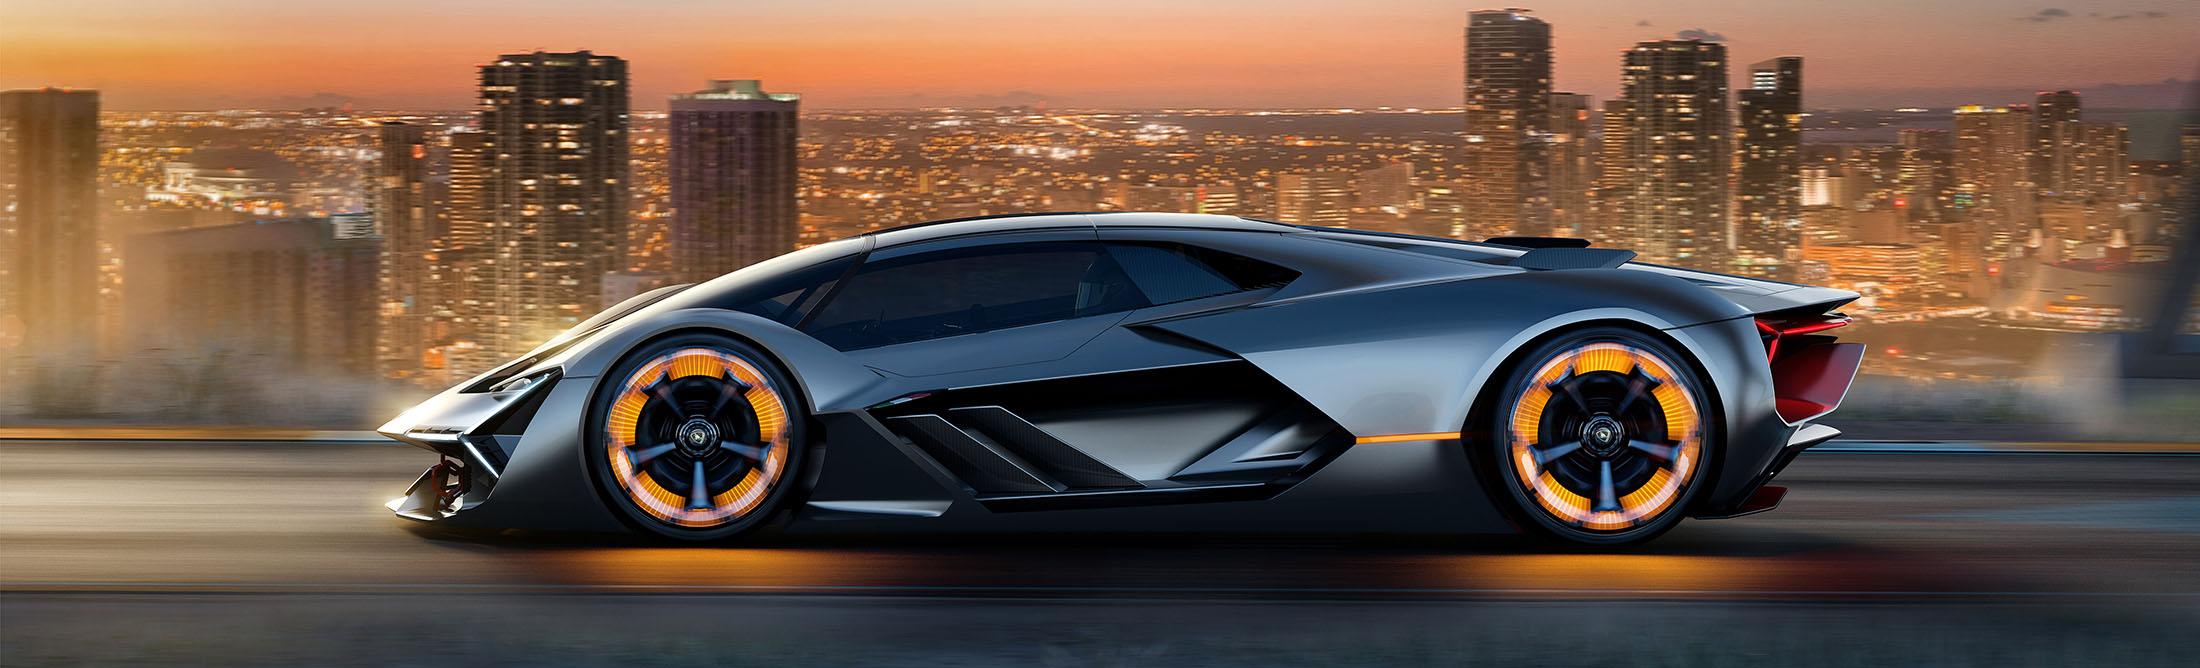 Lamborghini Terzo Millennio Concept Self Healing Electric